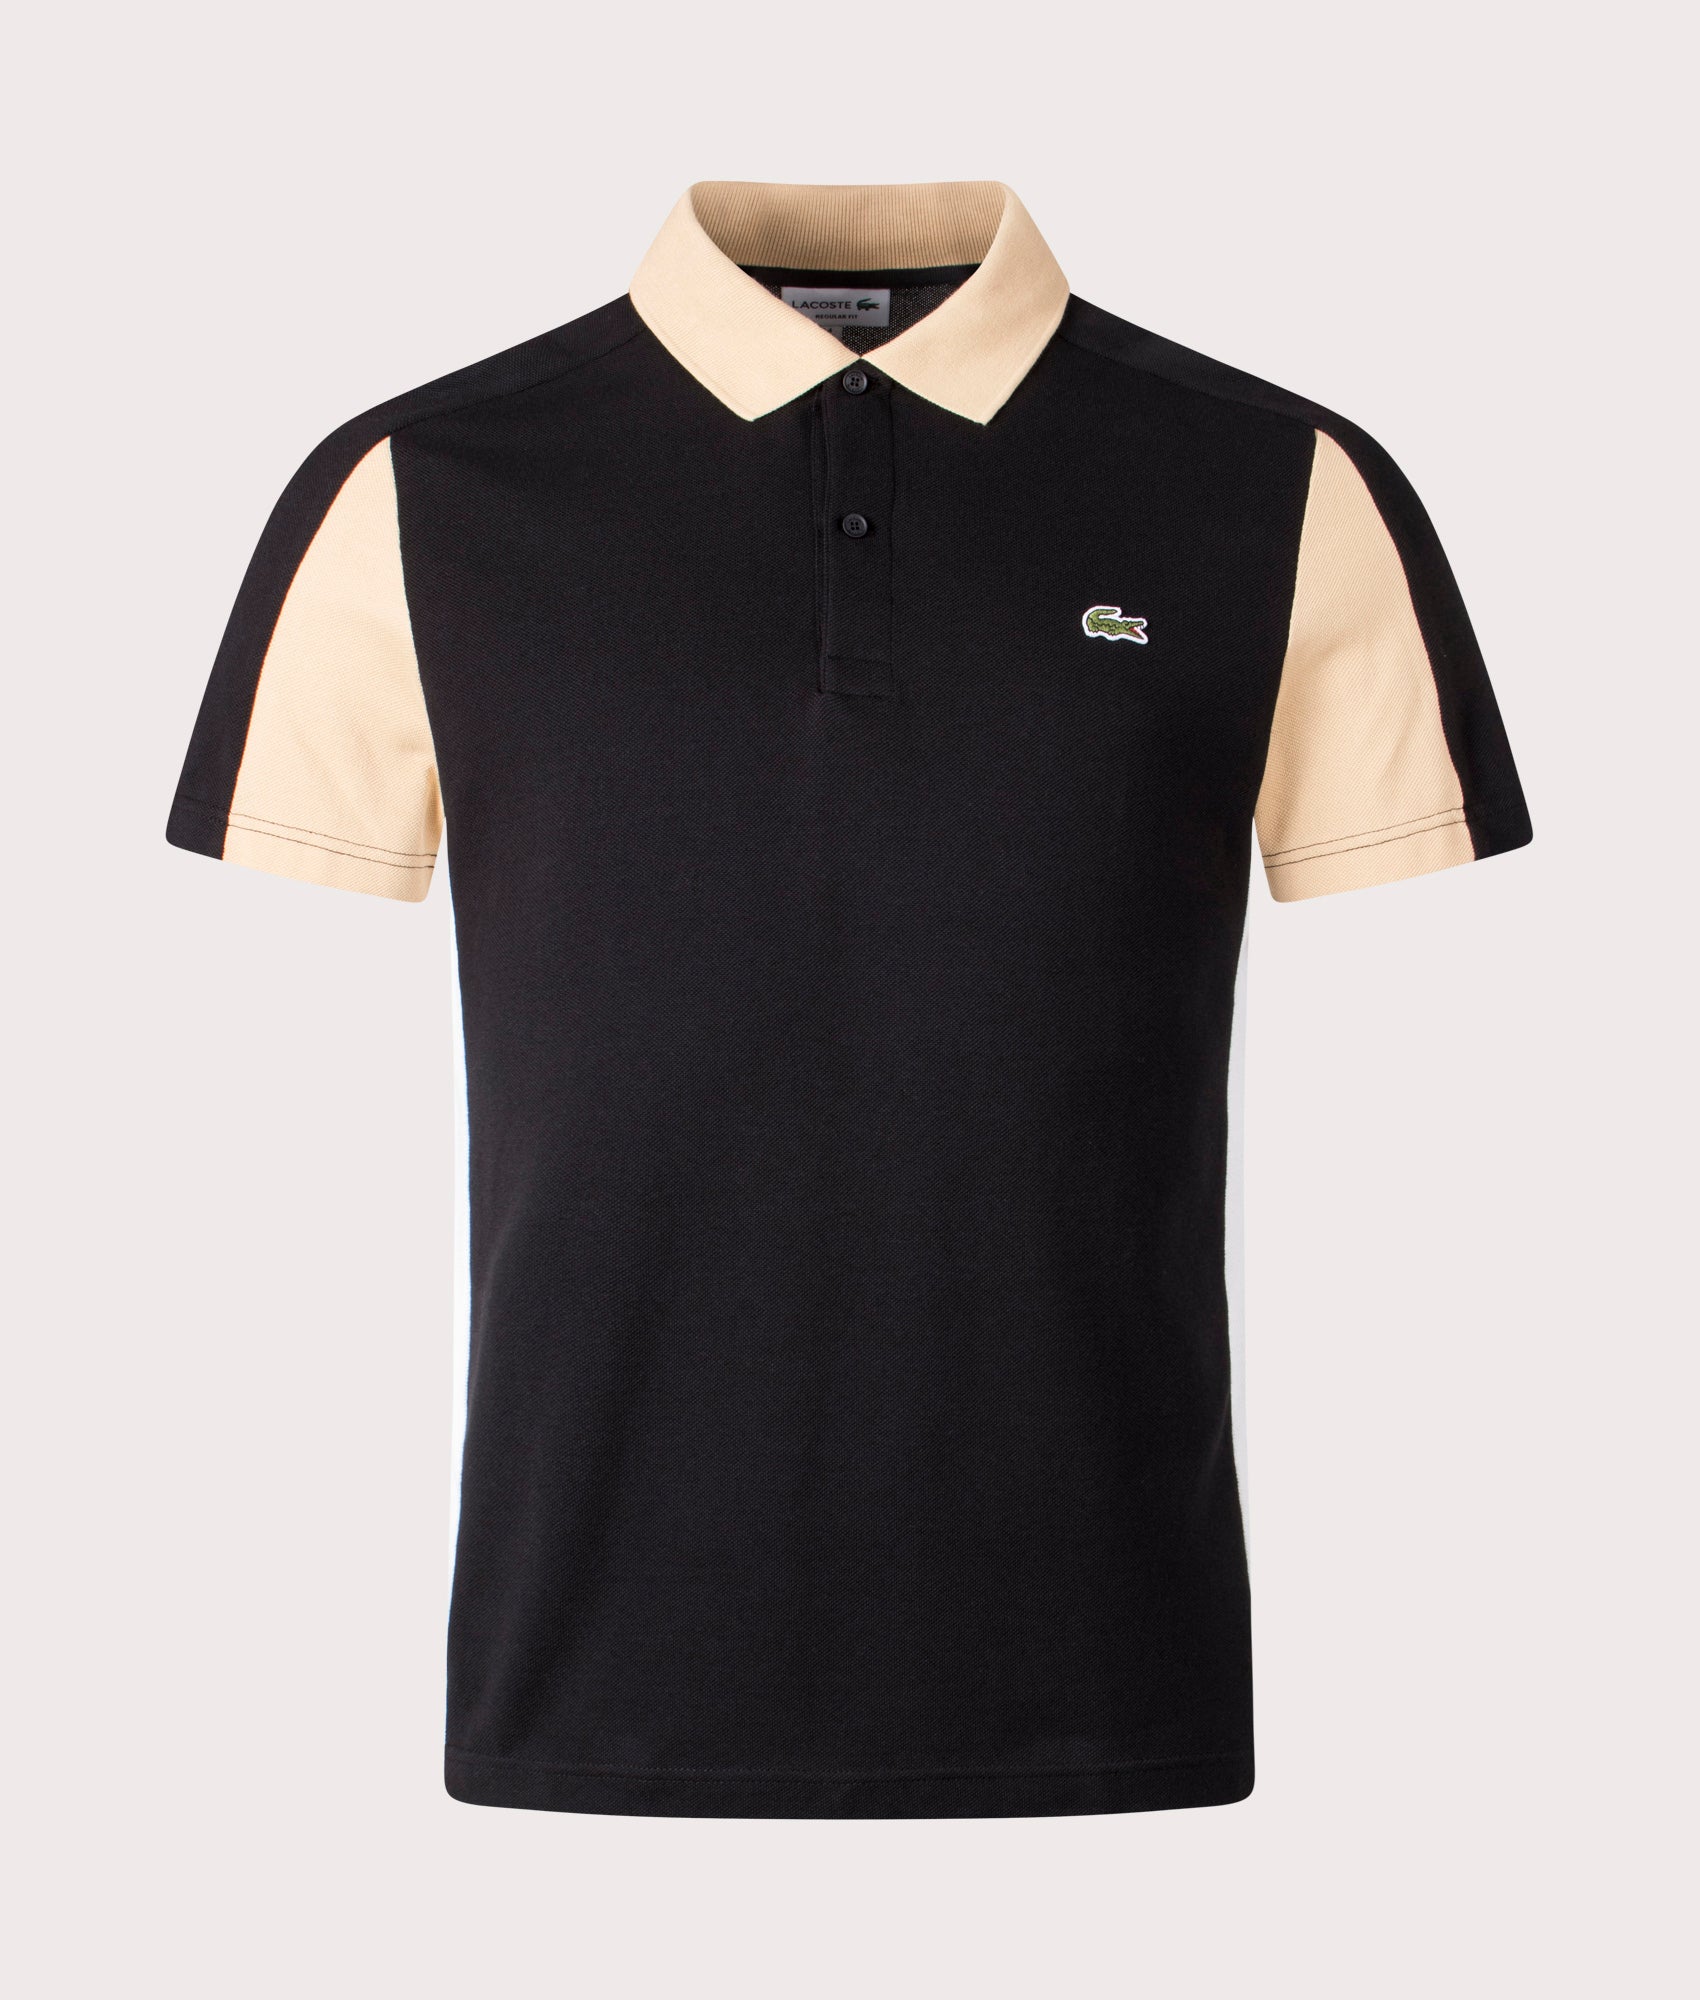 Lacoste Mens Cotton Pique Colourblock Polo Shirt - Colour: IKH Black/Croissant/Flour - Size: 4/M